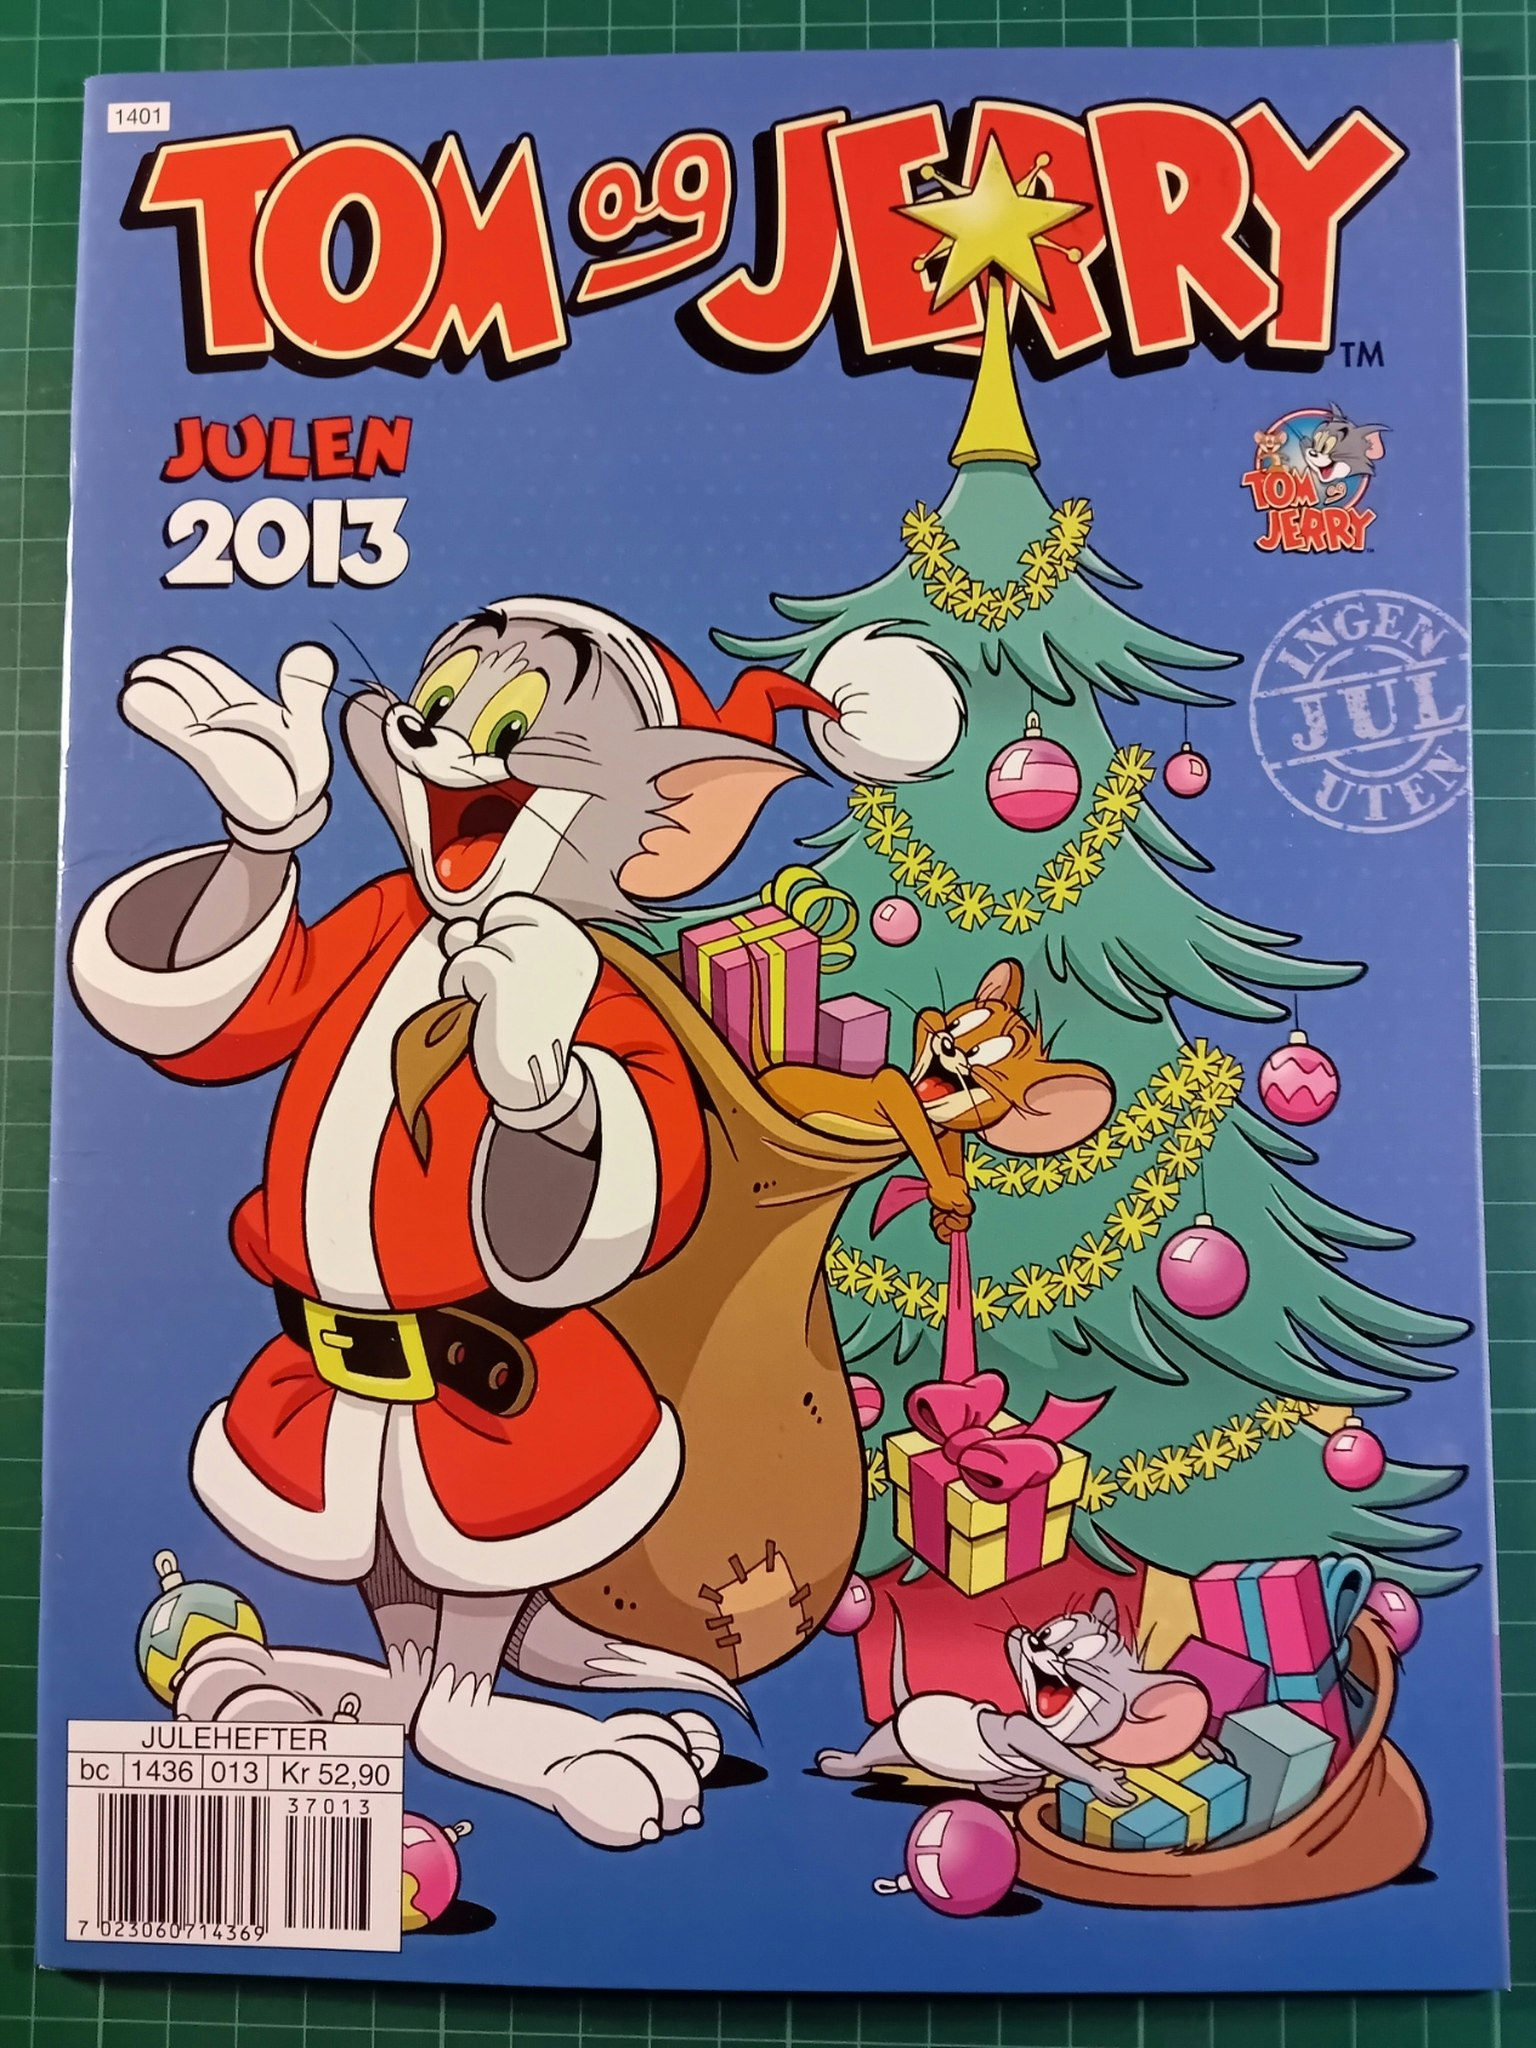 Tom & Jerry julen 2013